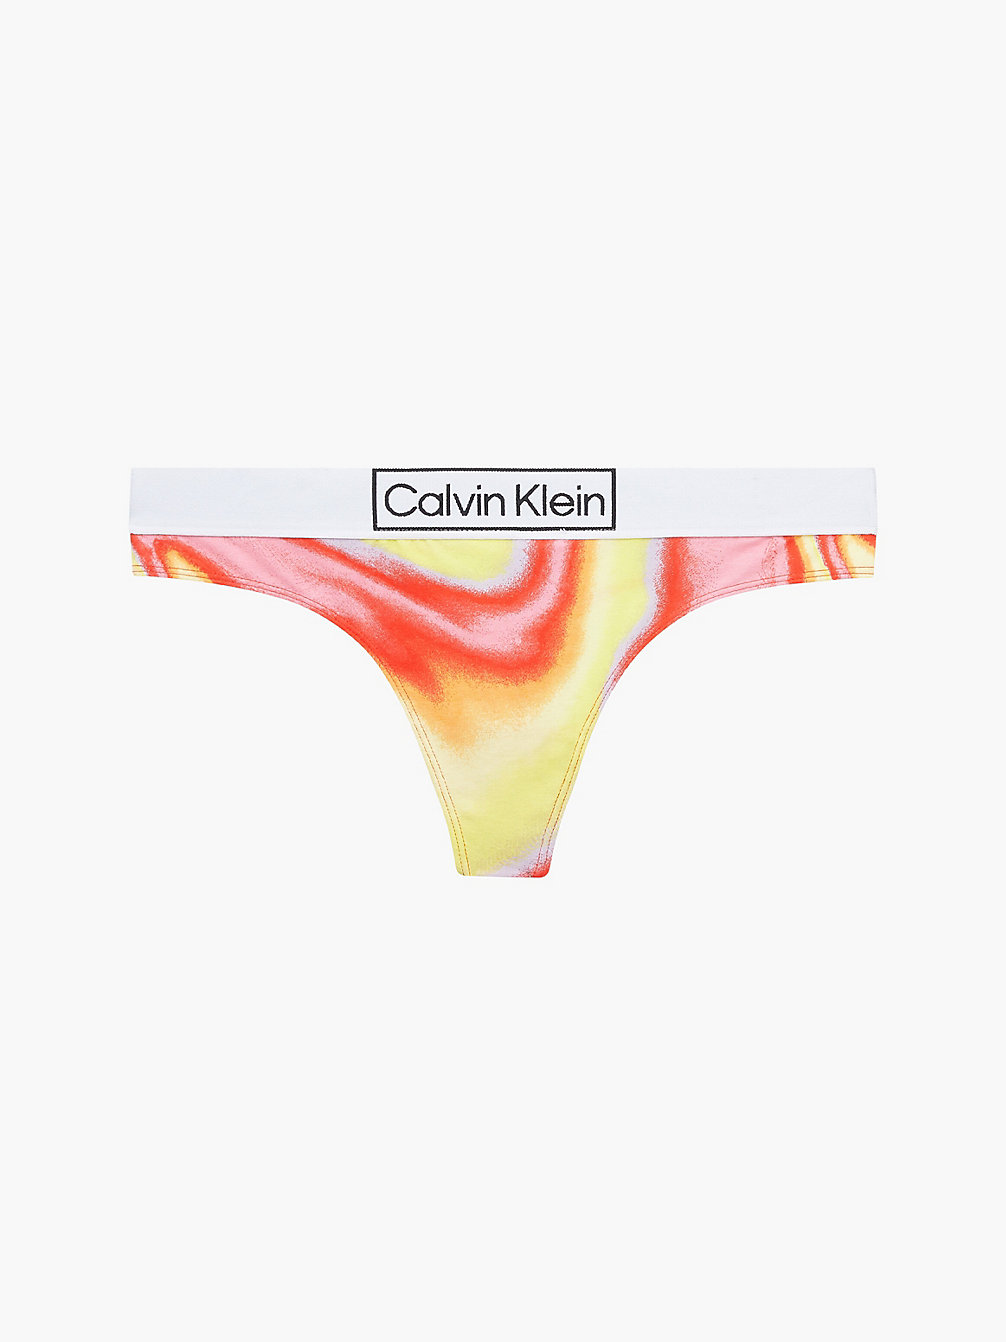 IRIDESCENT PRINT_TUSCAN TERRA COTTA String - Pride undefined dames Calvin Klein